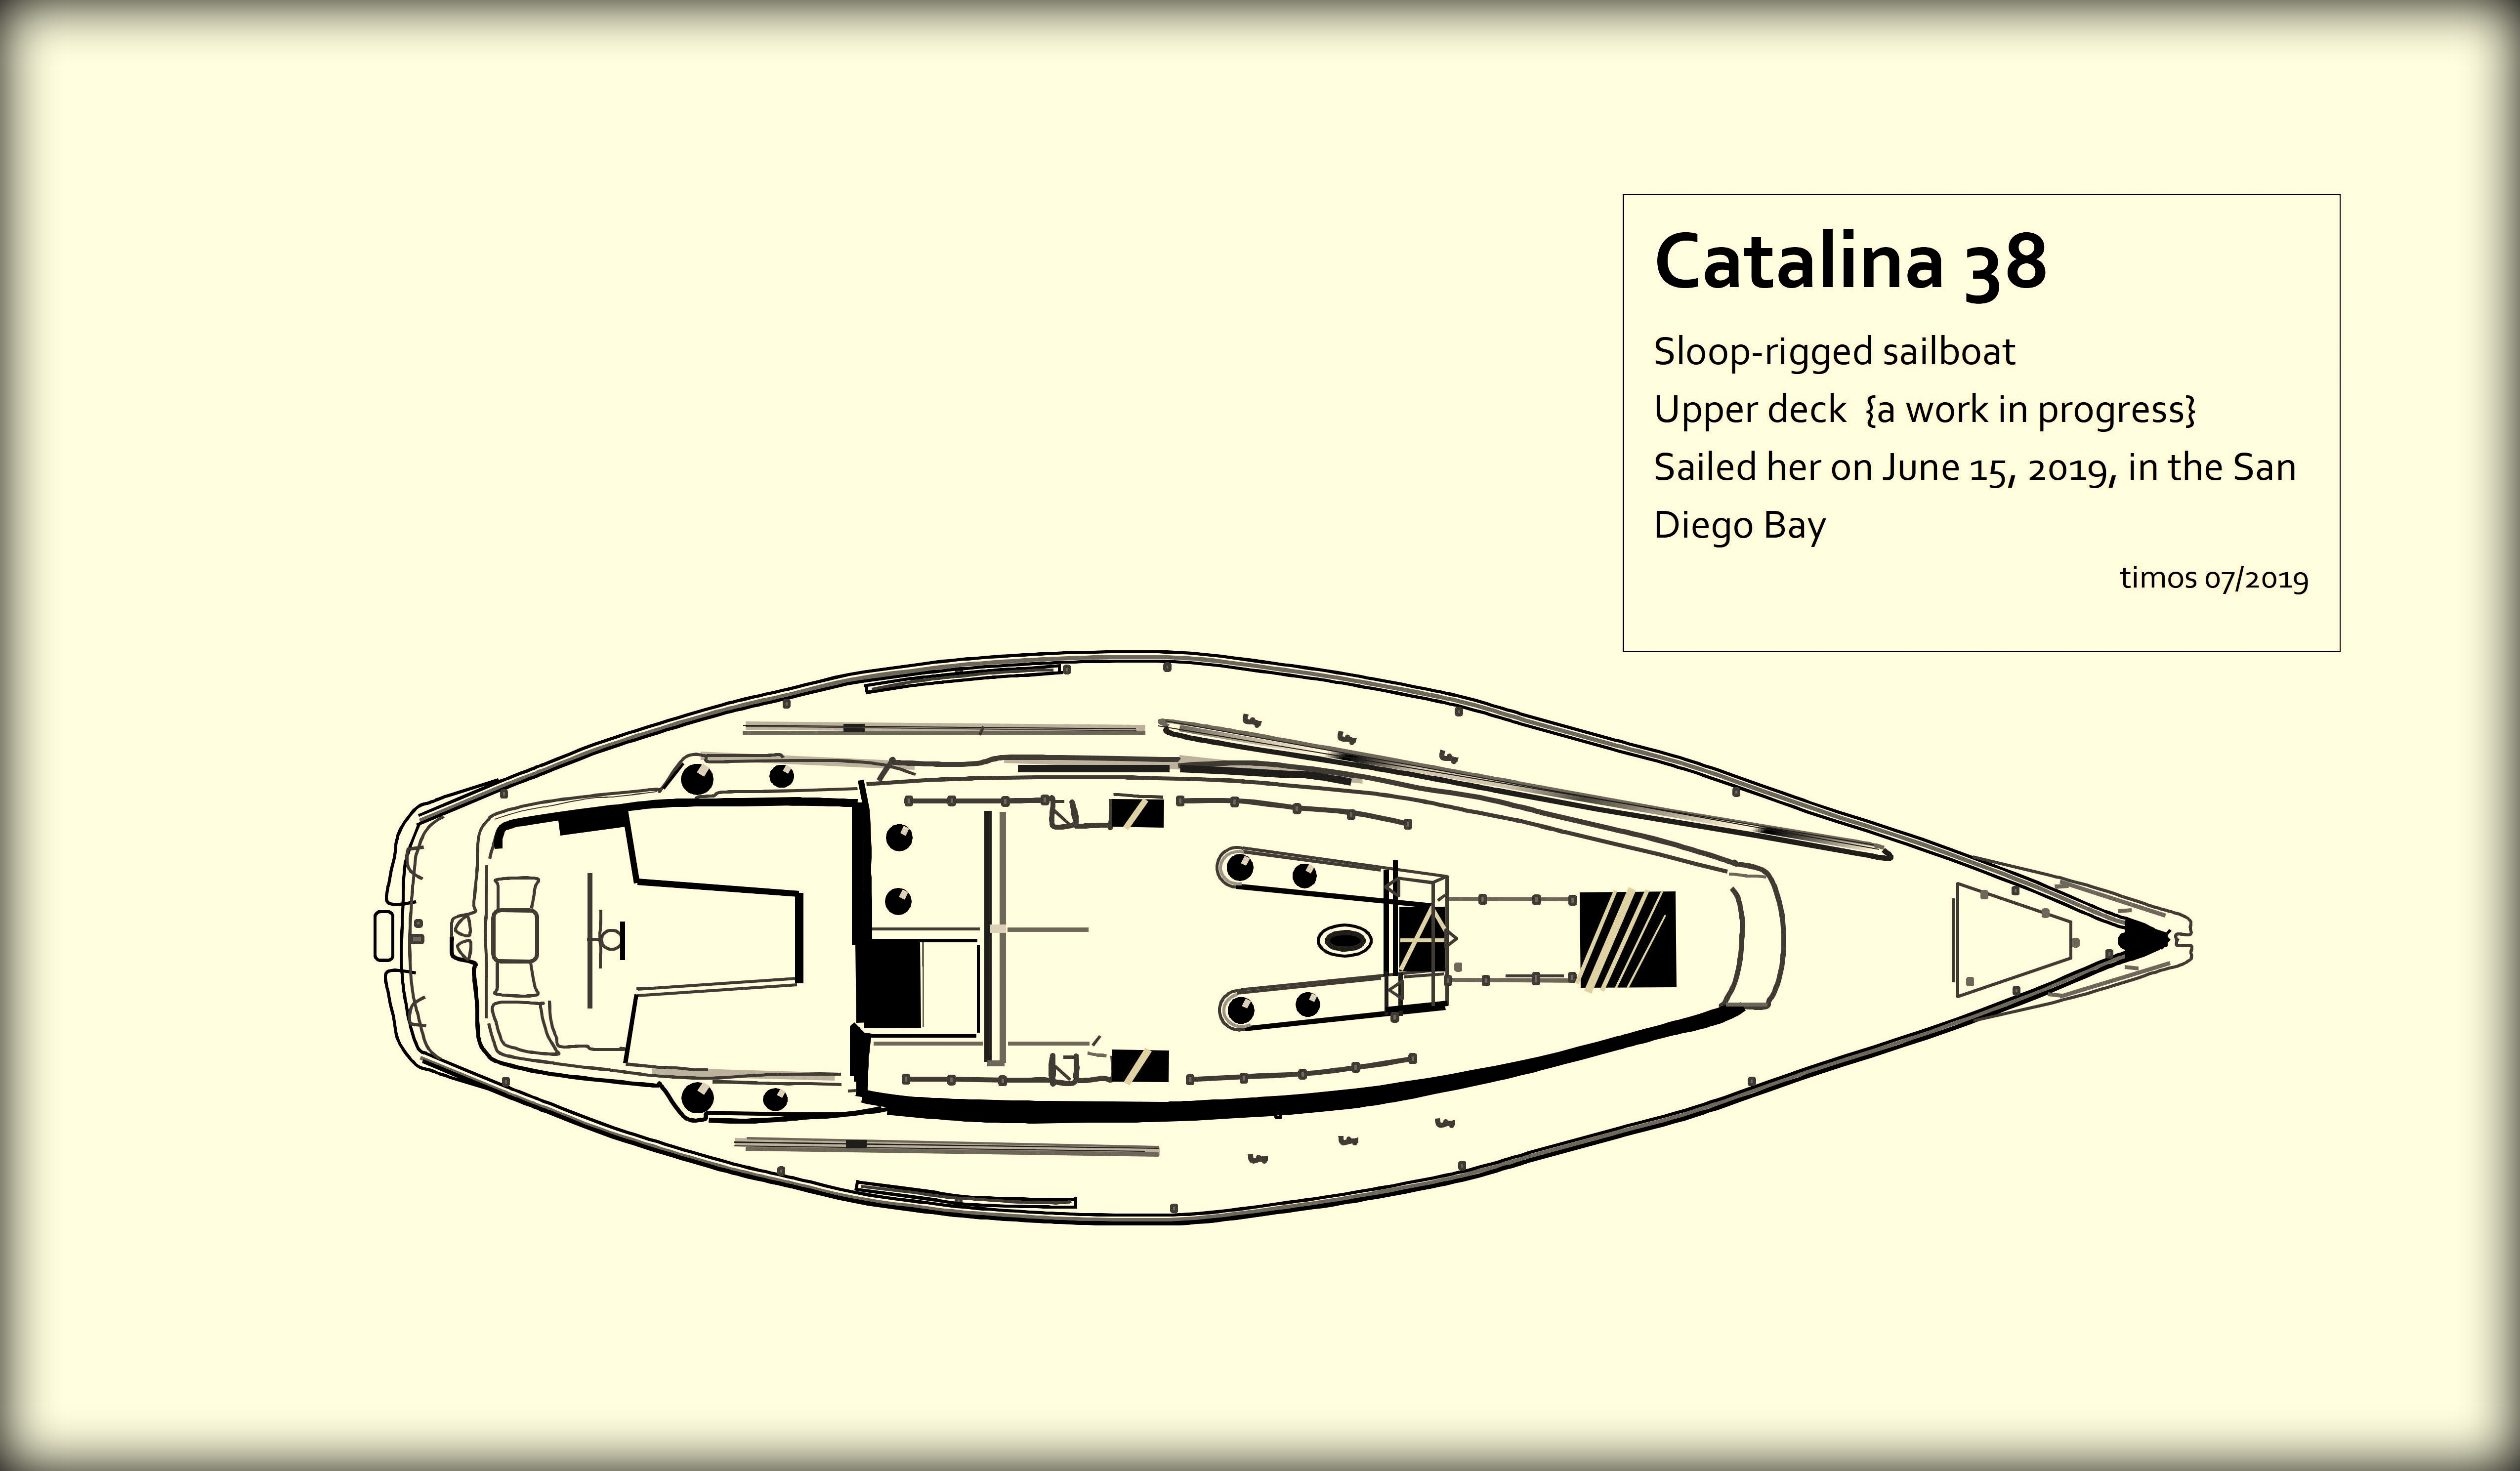 Catalina 38 – upper deck